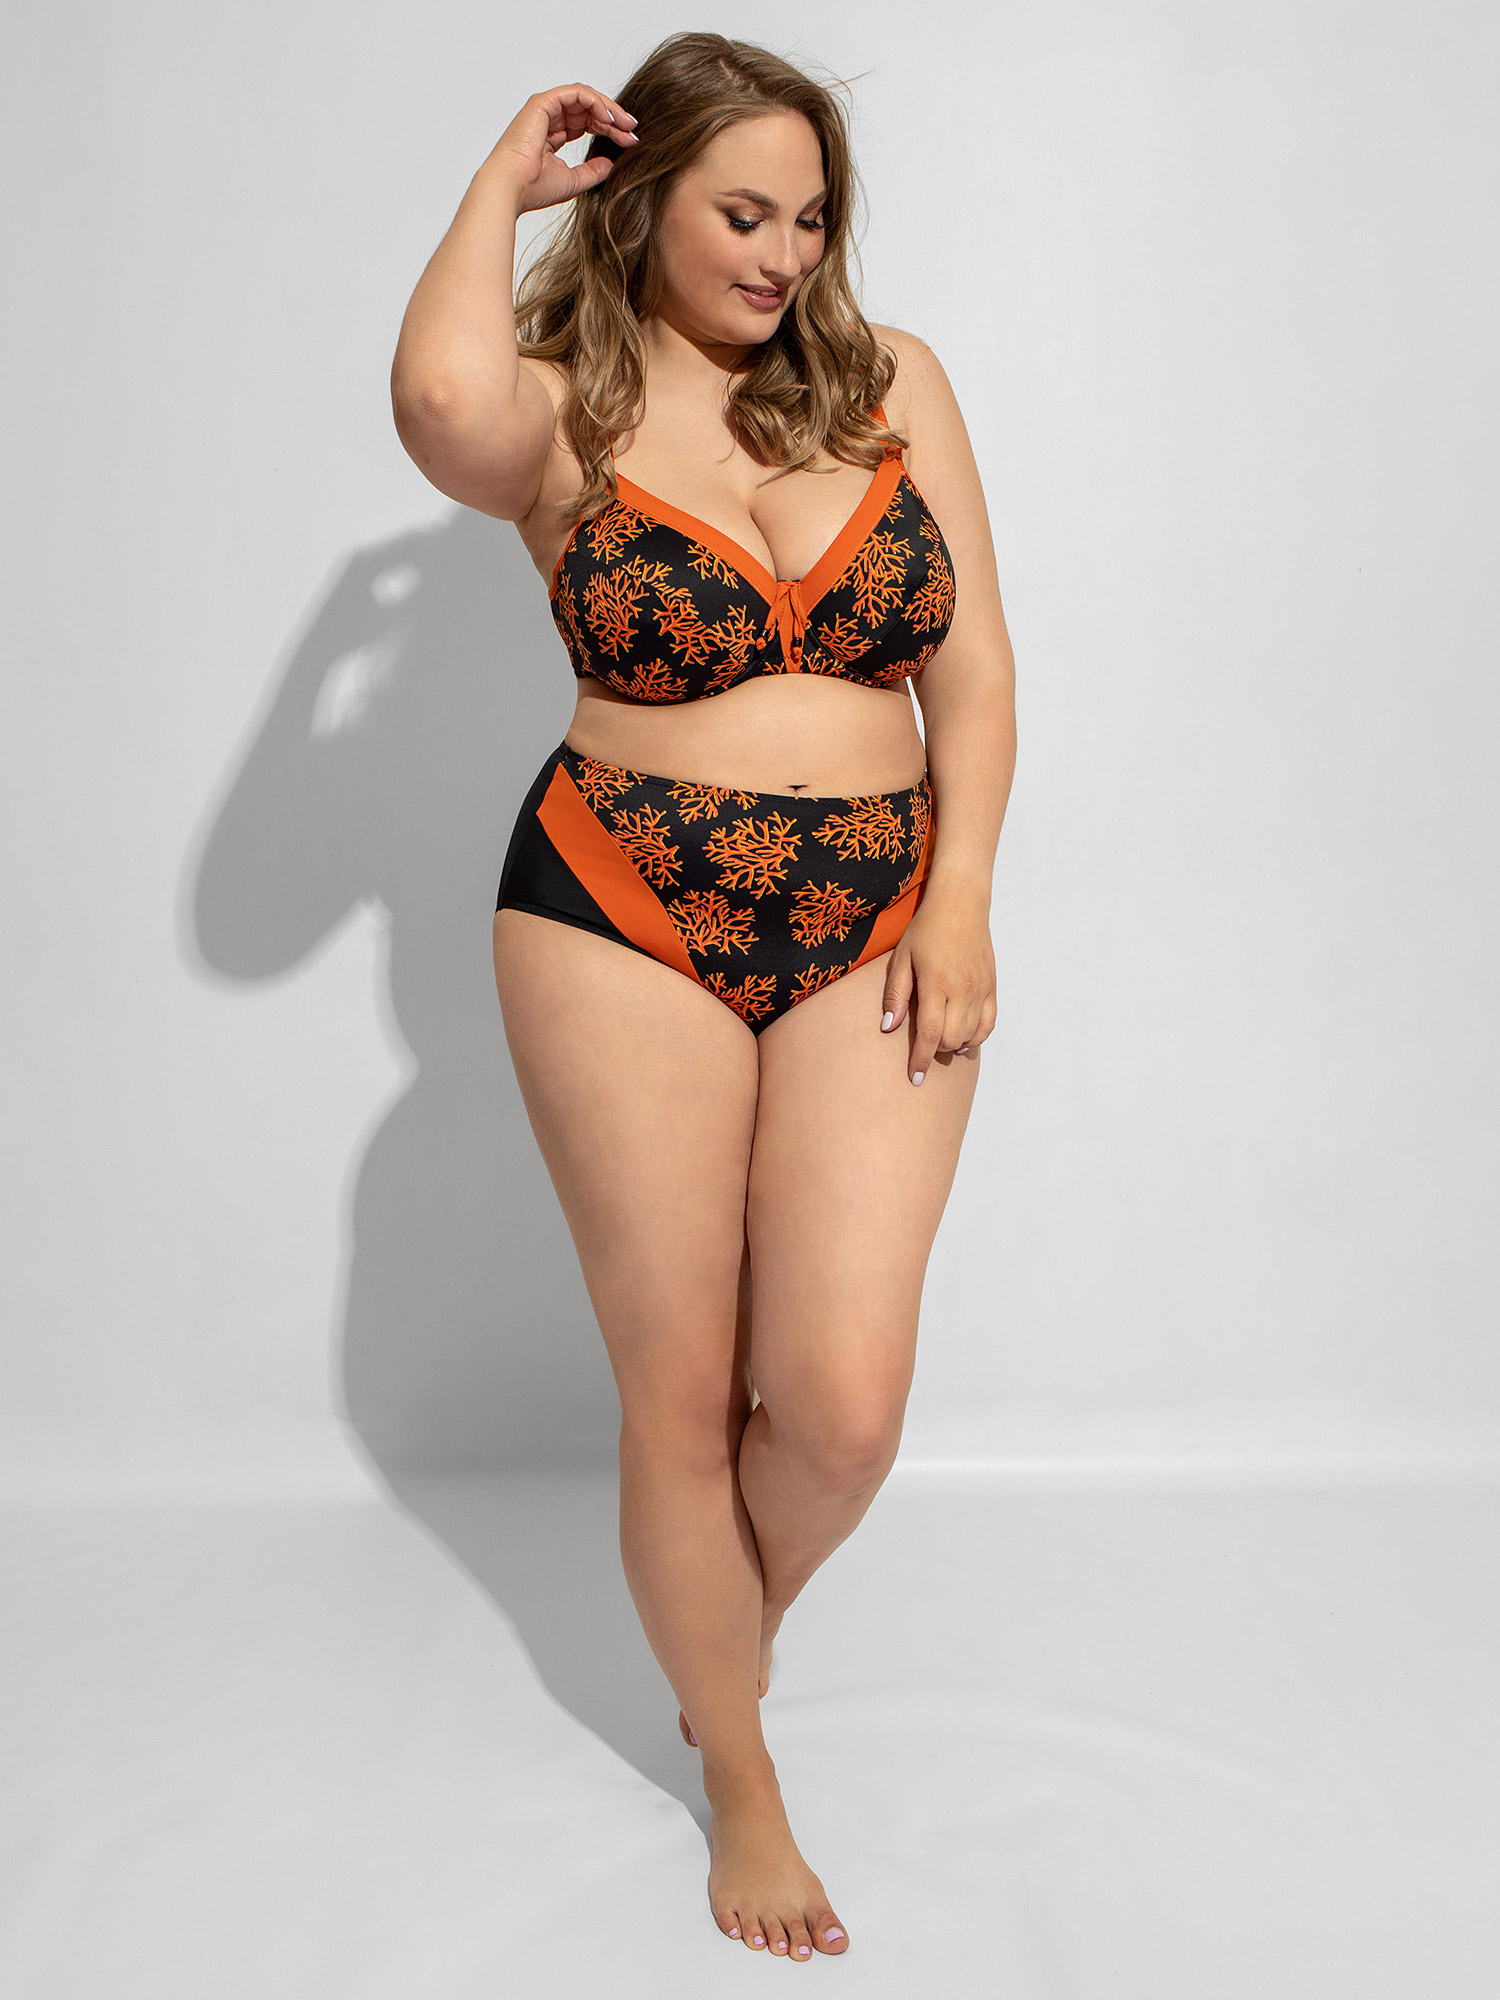 Maxi - Sort bikini truse med oransje print fra Plaisir